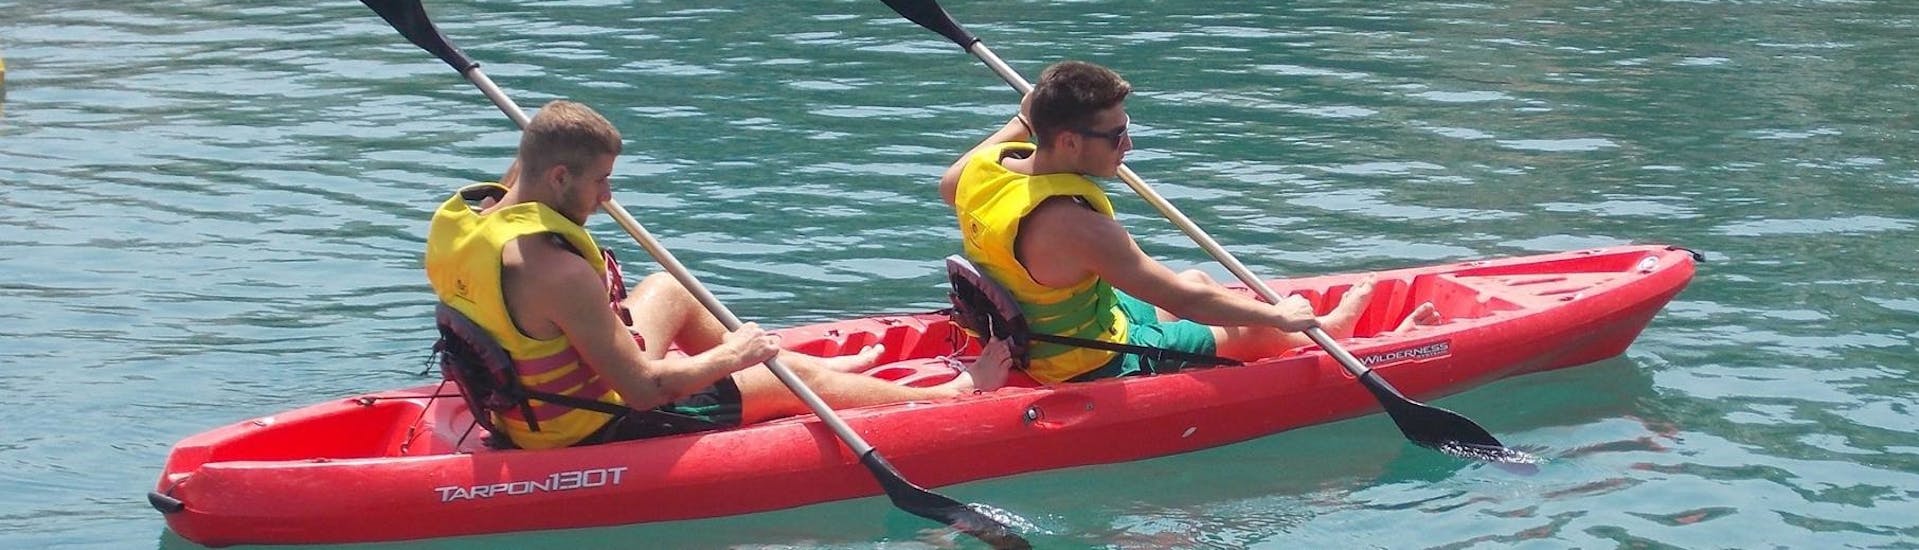 Deux personnes pagaient ensemble sur le canoe lors de la Location de canoë à Bali en Crète avec The Skippers Bali.